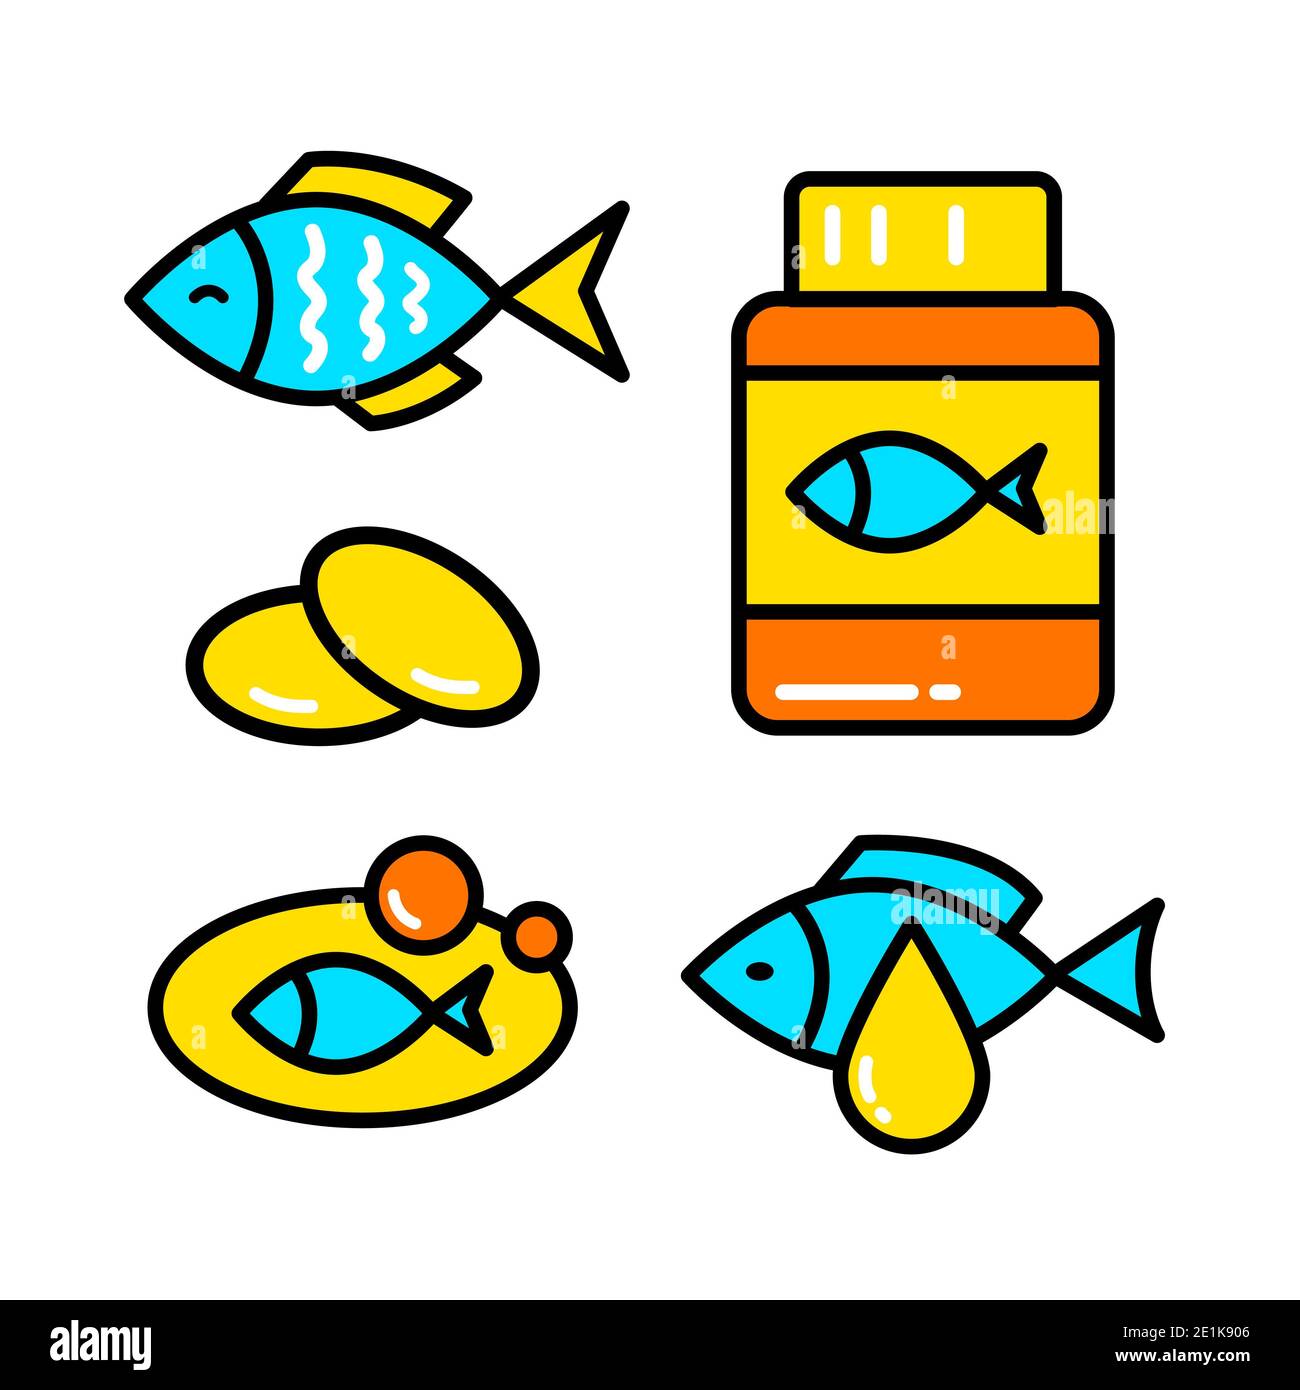 Logo Omega 3. Motif vectoriel huile de poisson. Ensemble d'icônes de poisson simple Banque D'Images